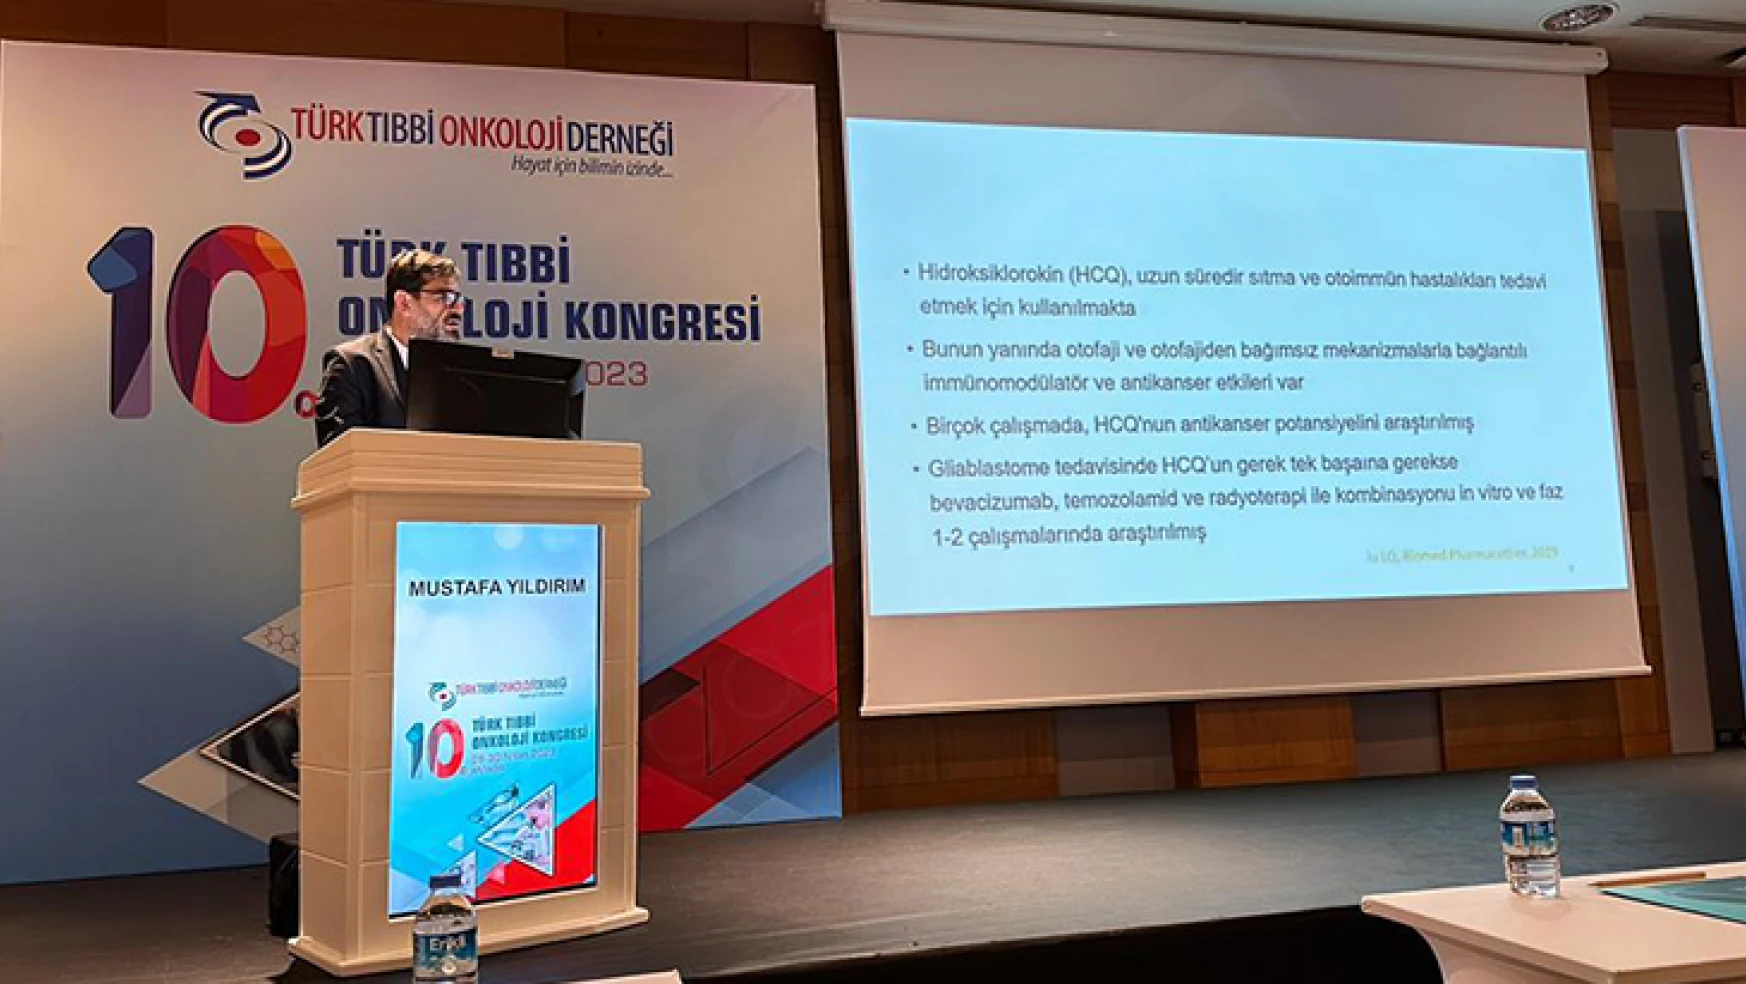 Prof. Dr. Mustafa Yıldırım, Onkolojide İlaç Tasarımı konusunda en iyi çalışma ödülüne değer görüldü